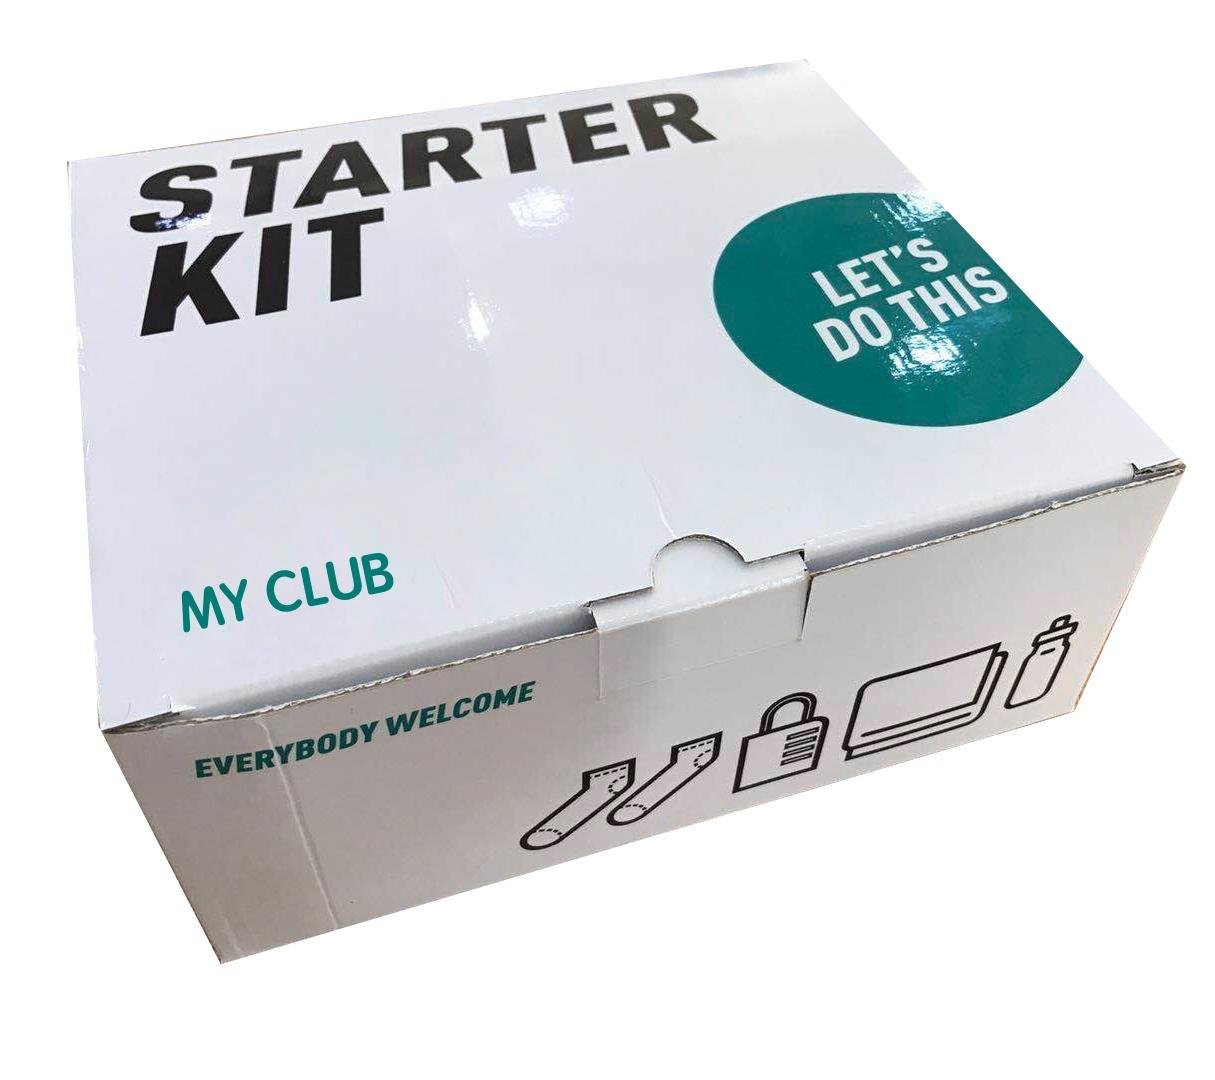 Basic Starter Kit